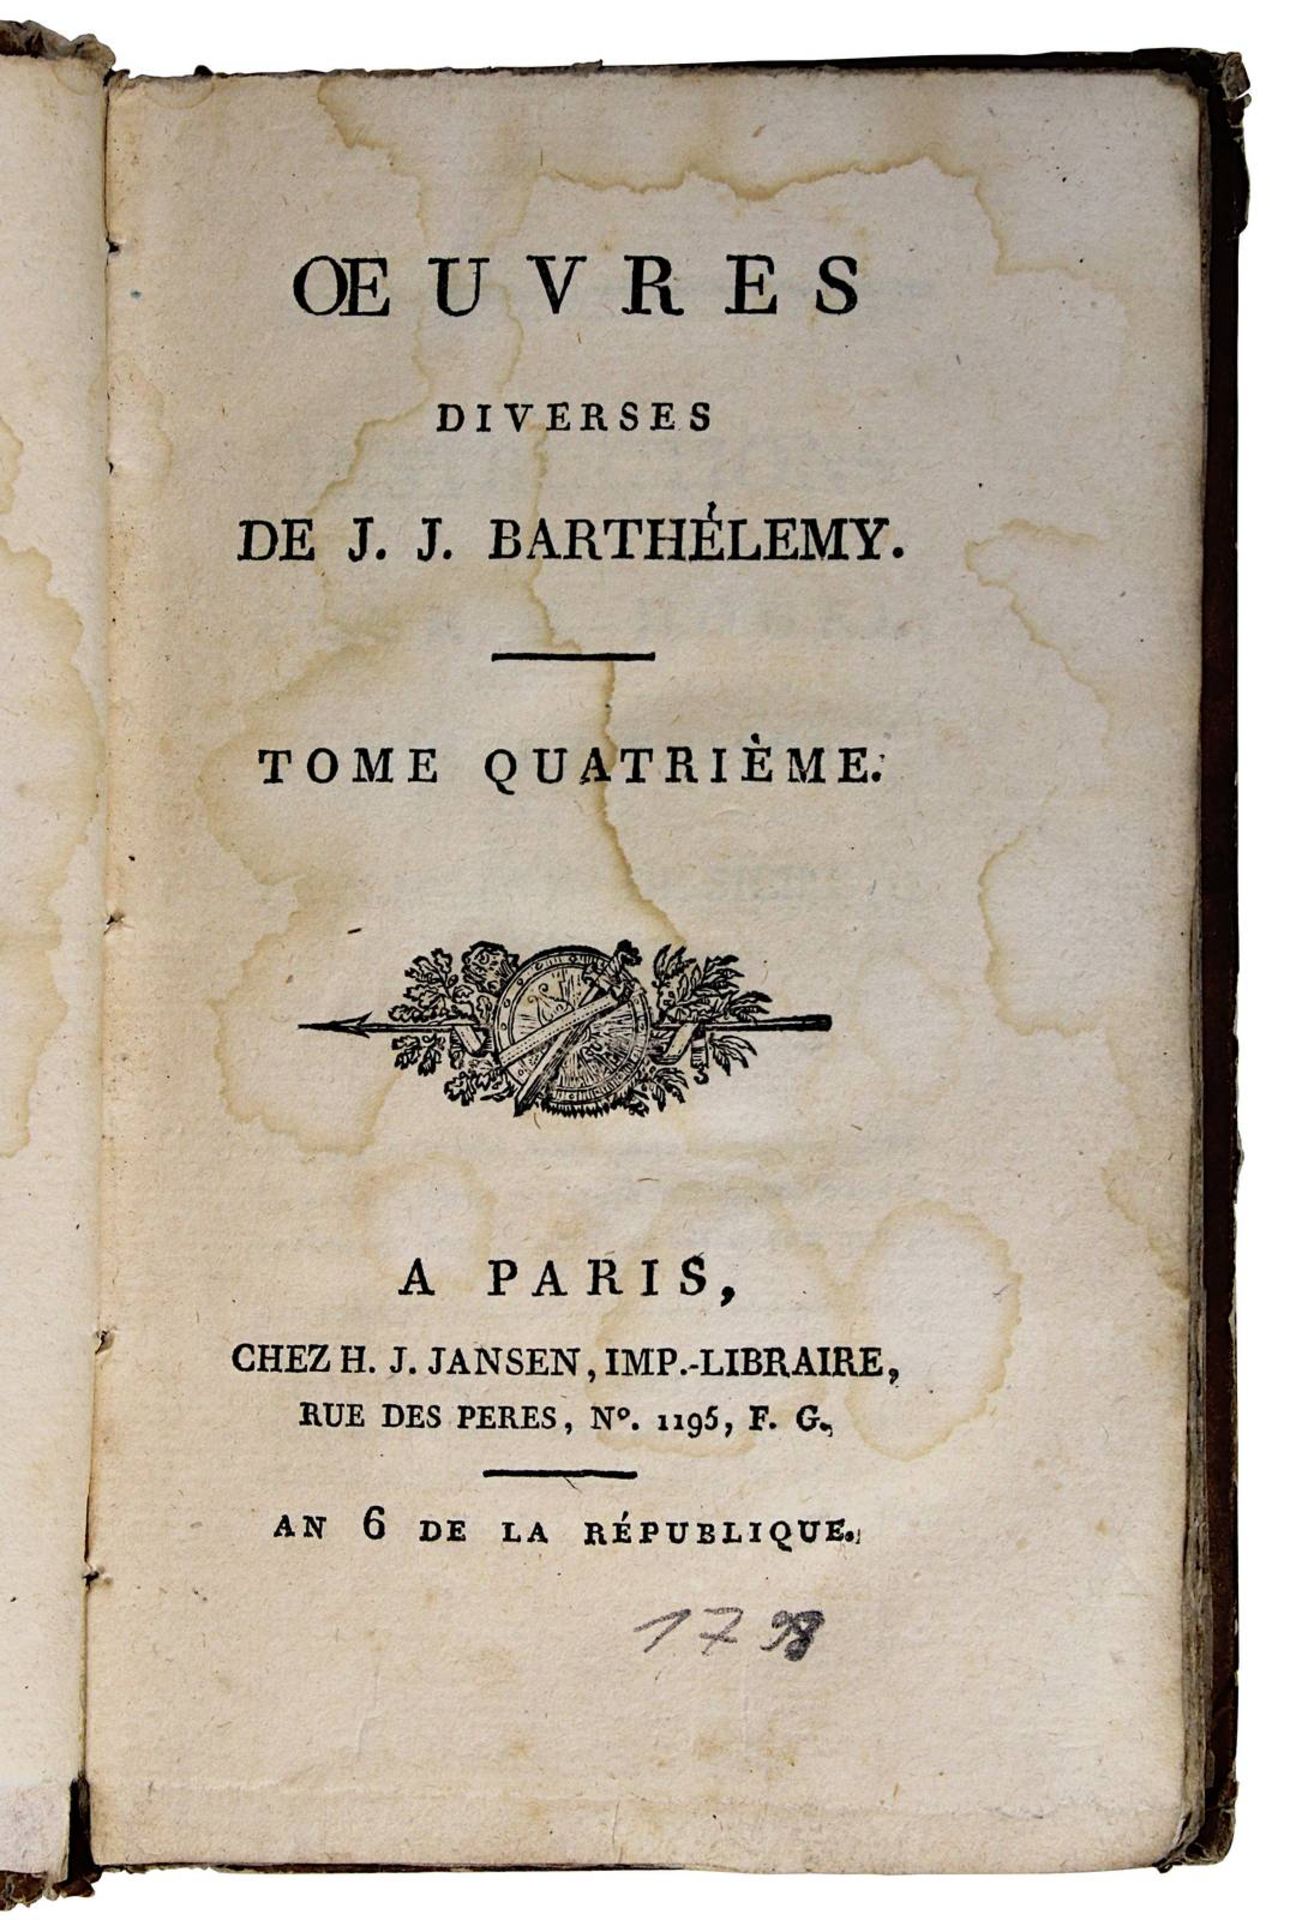 Barthélemy, J. J., "Oeuvres diverses", "Suite de science, numismatique, lettres, etc.", Tome